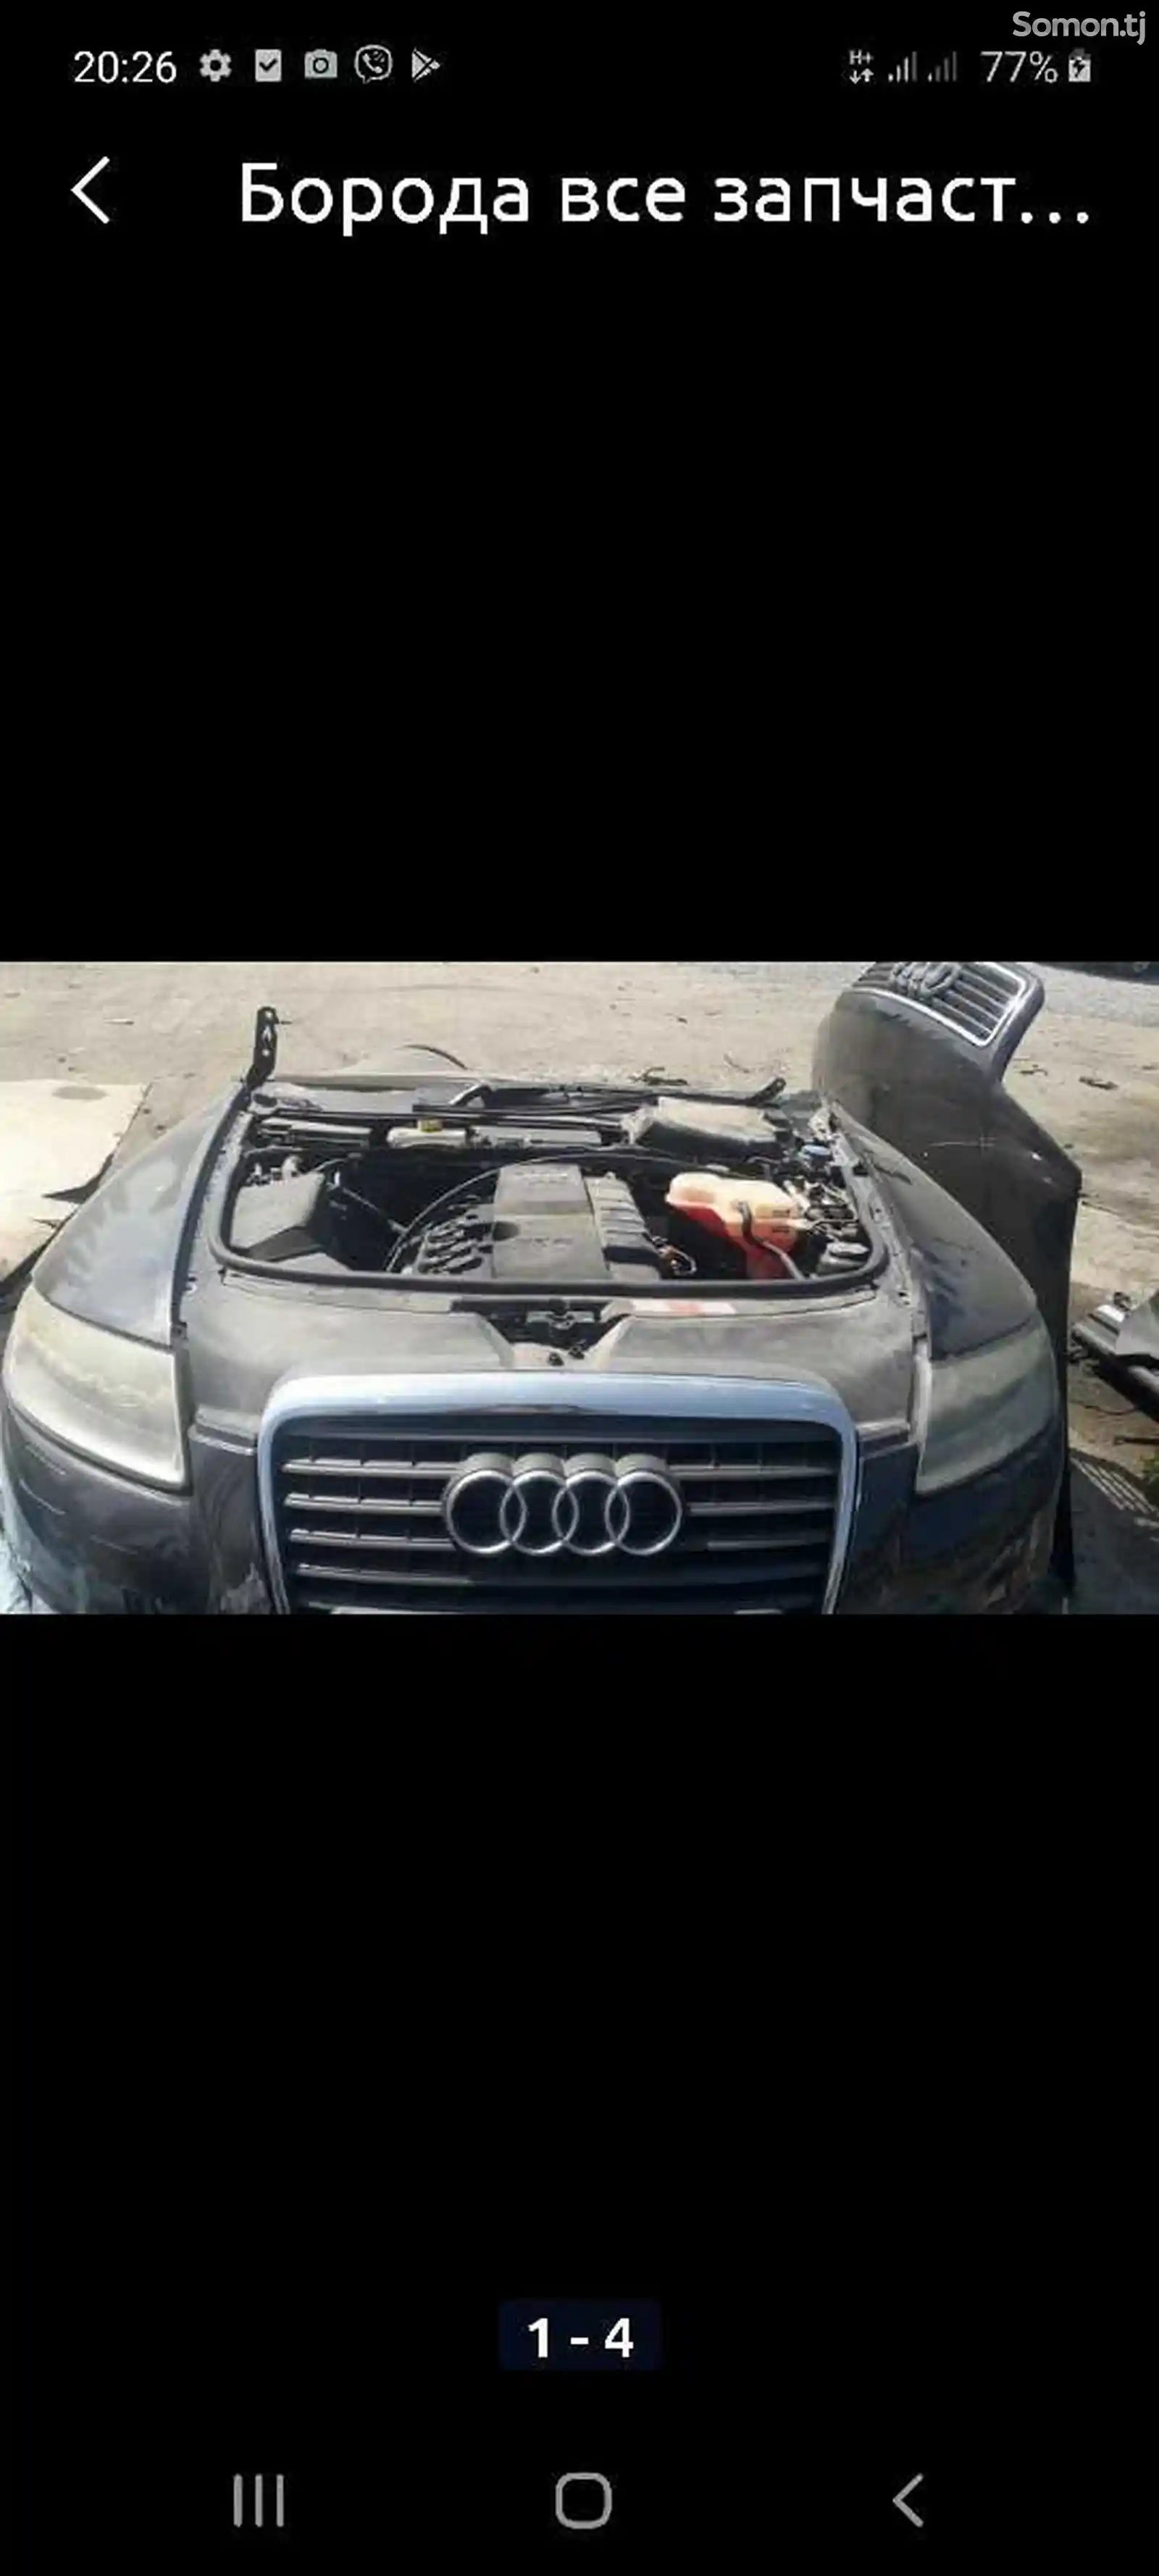 Двигатель от Audi-1